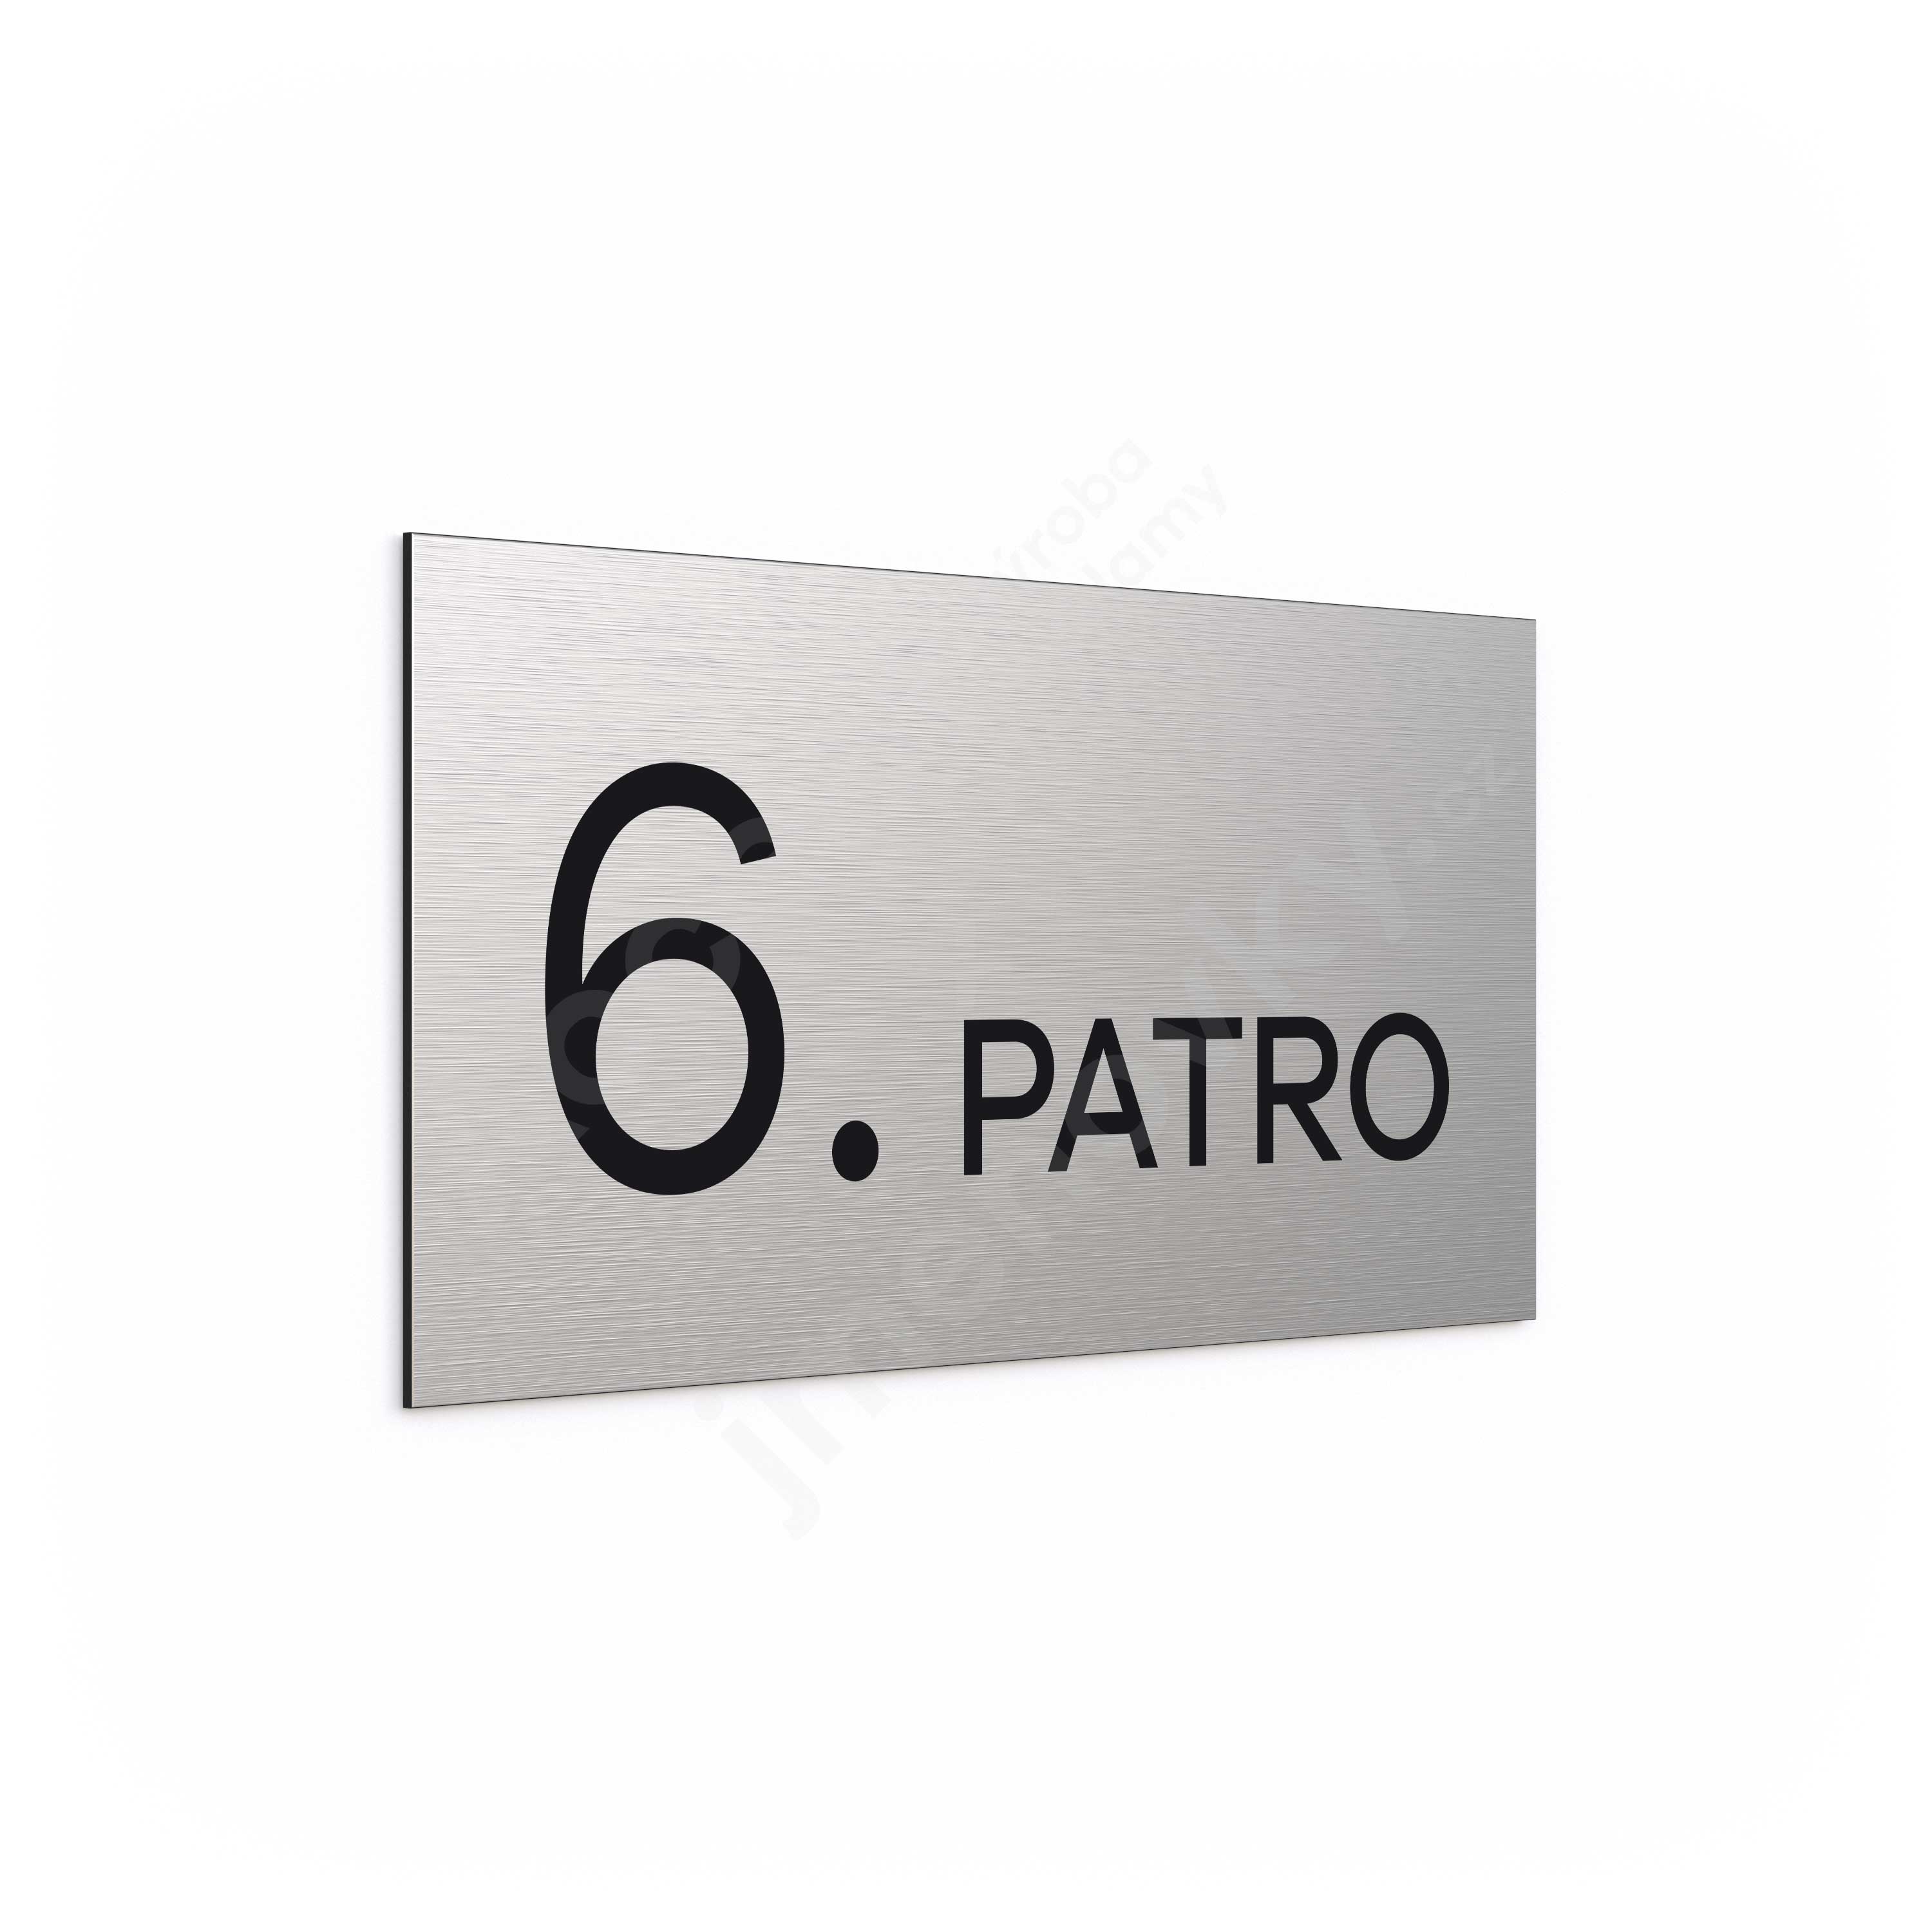 Oznaen podla "6. PATRO" (300 x 150 mm)